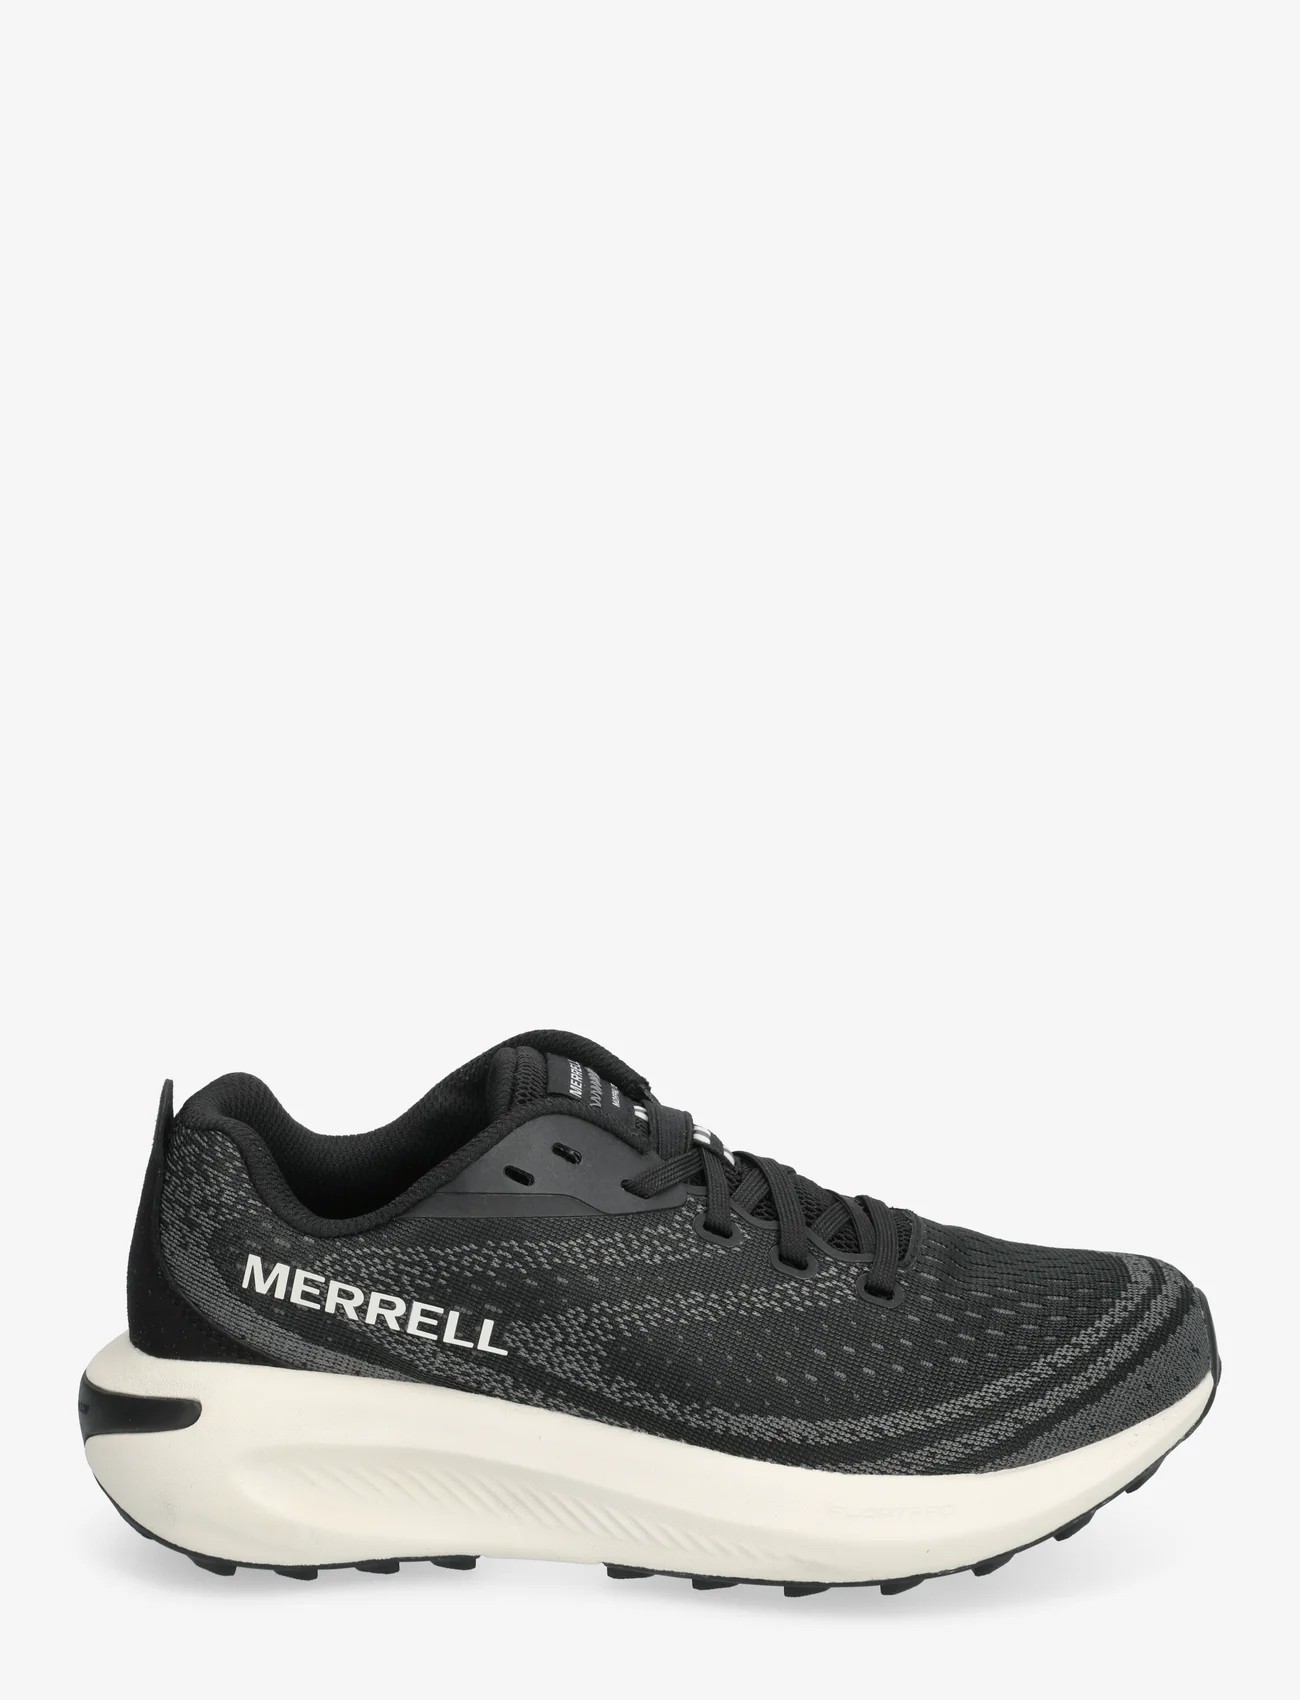 Merrell - Women's Morphlite - Black/White - skriešanas apavi - black/white - 1